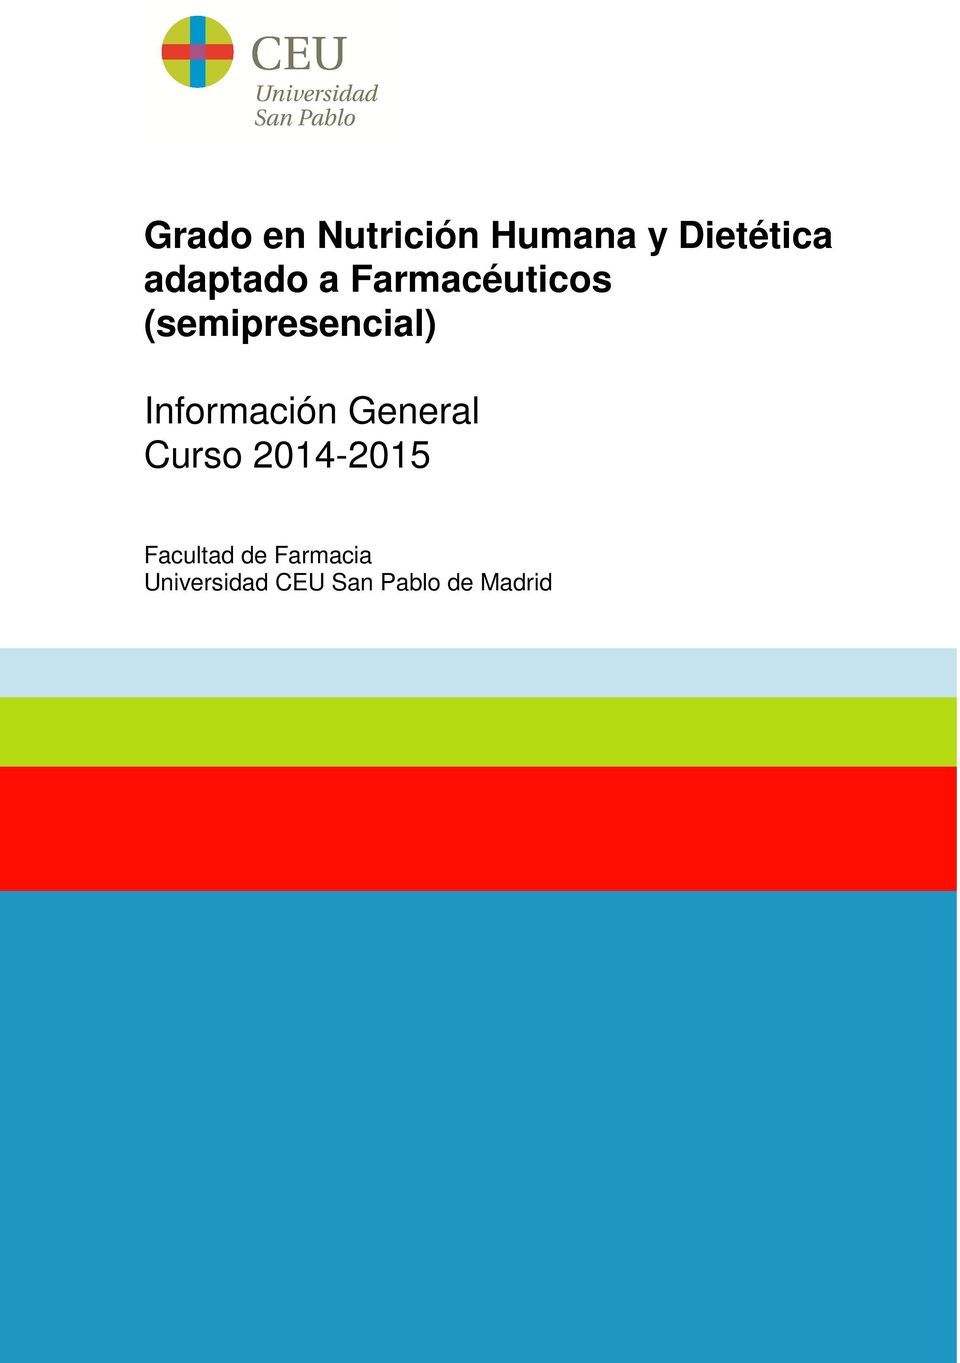 Información General Curso 2014-2015